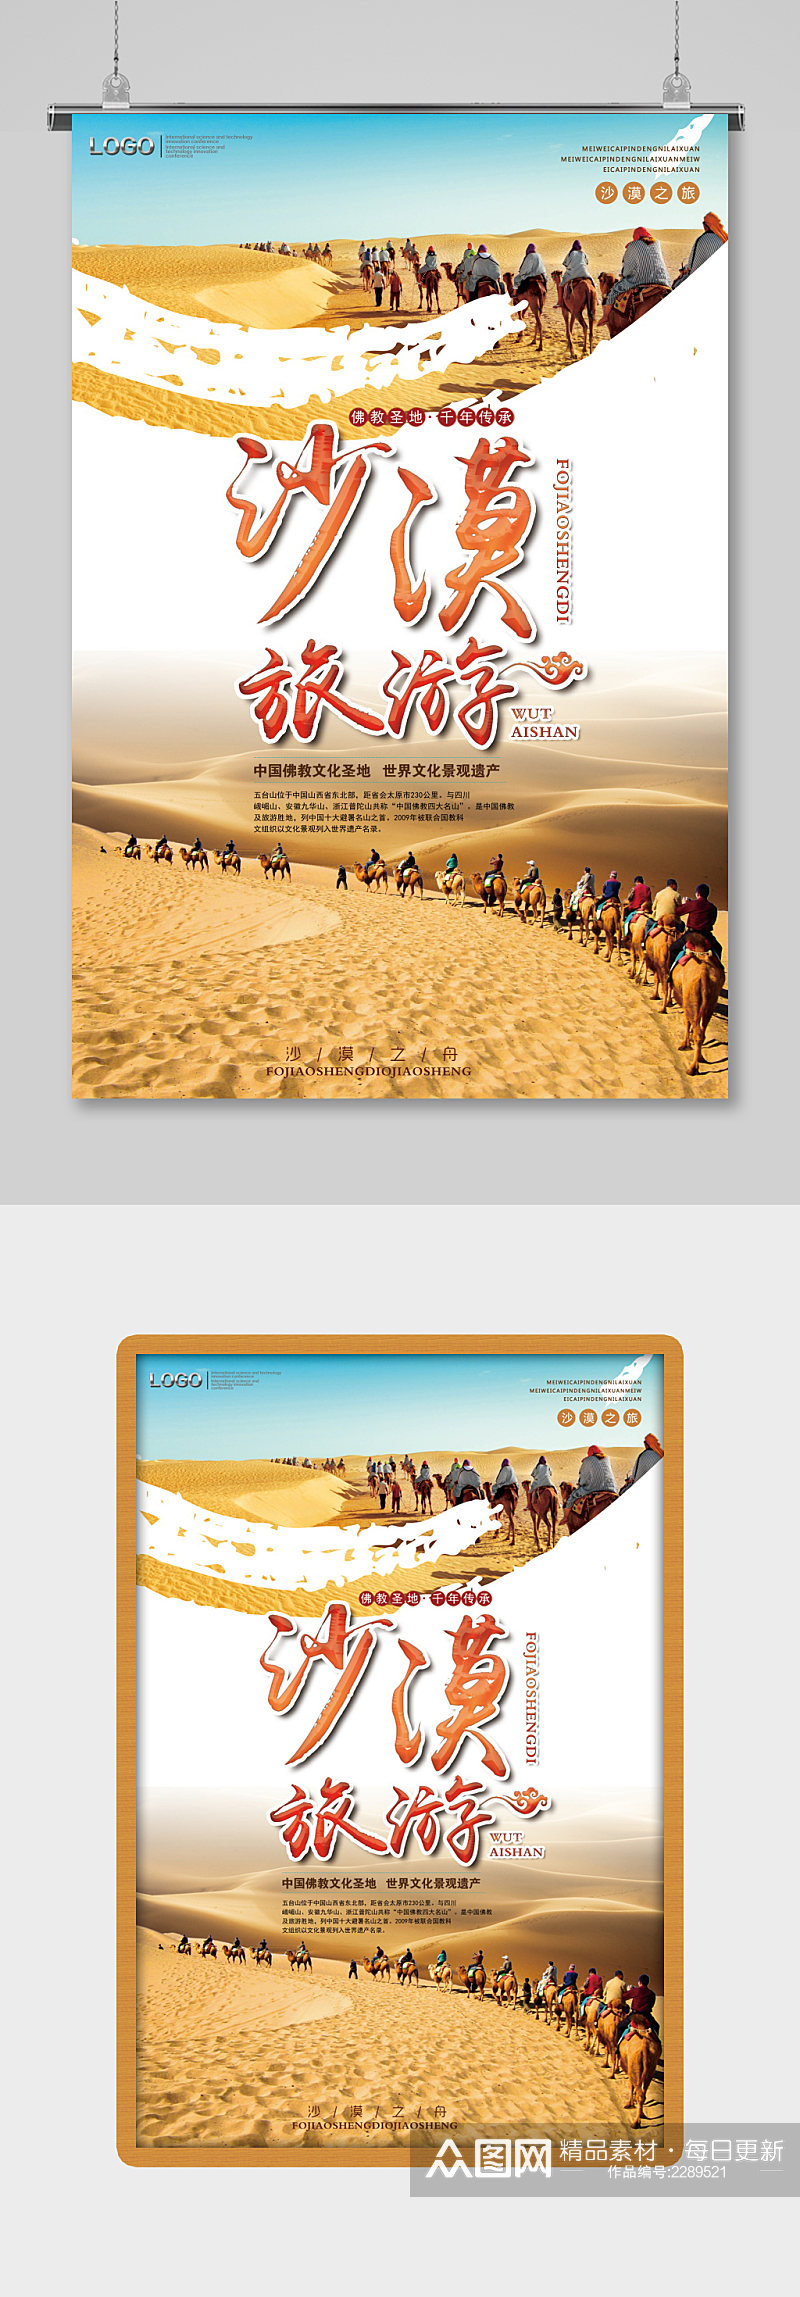 沙丘绿洲沙漠旅游海报设计素材